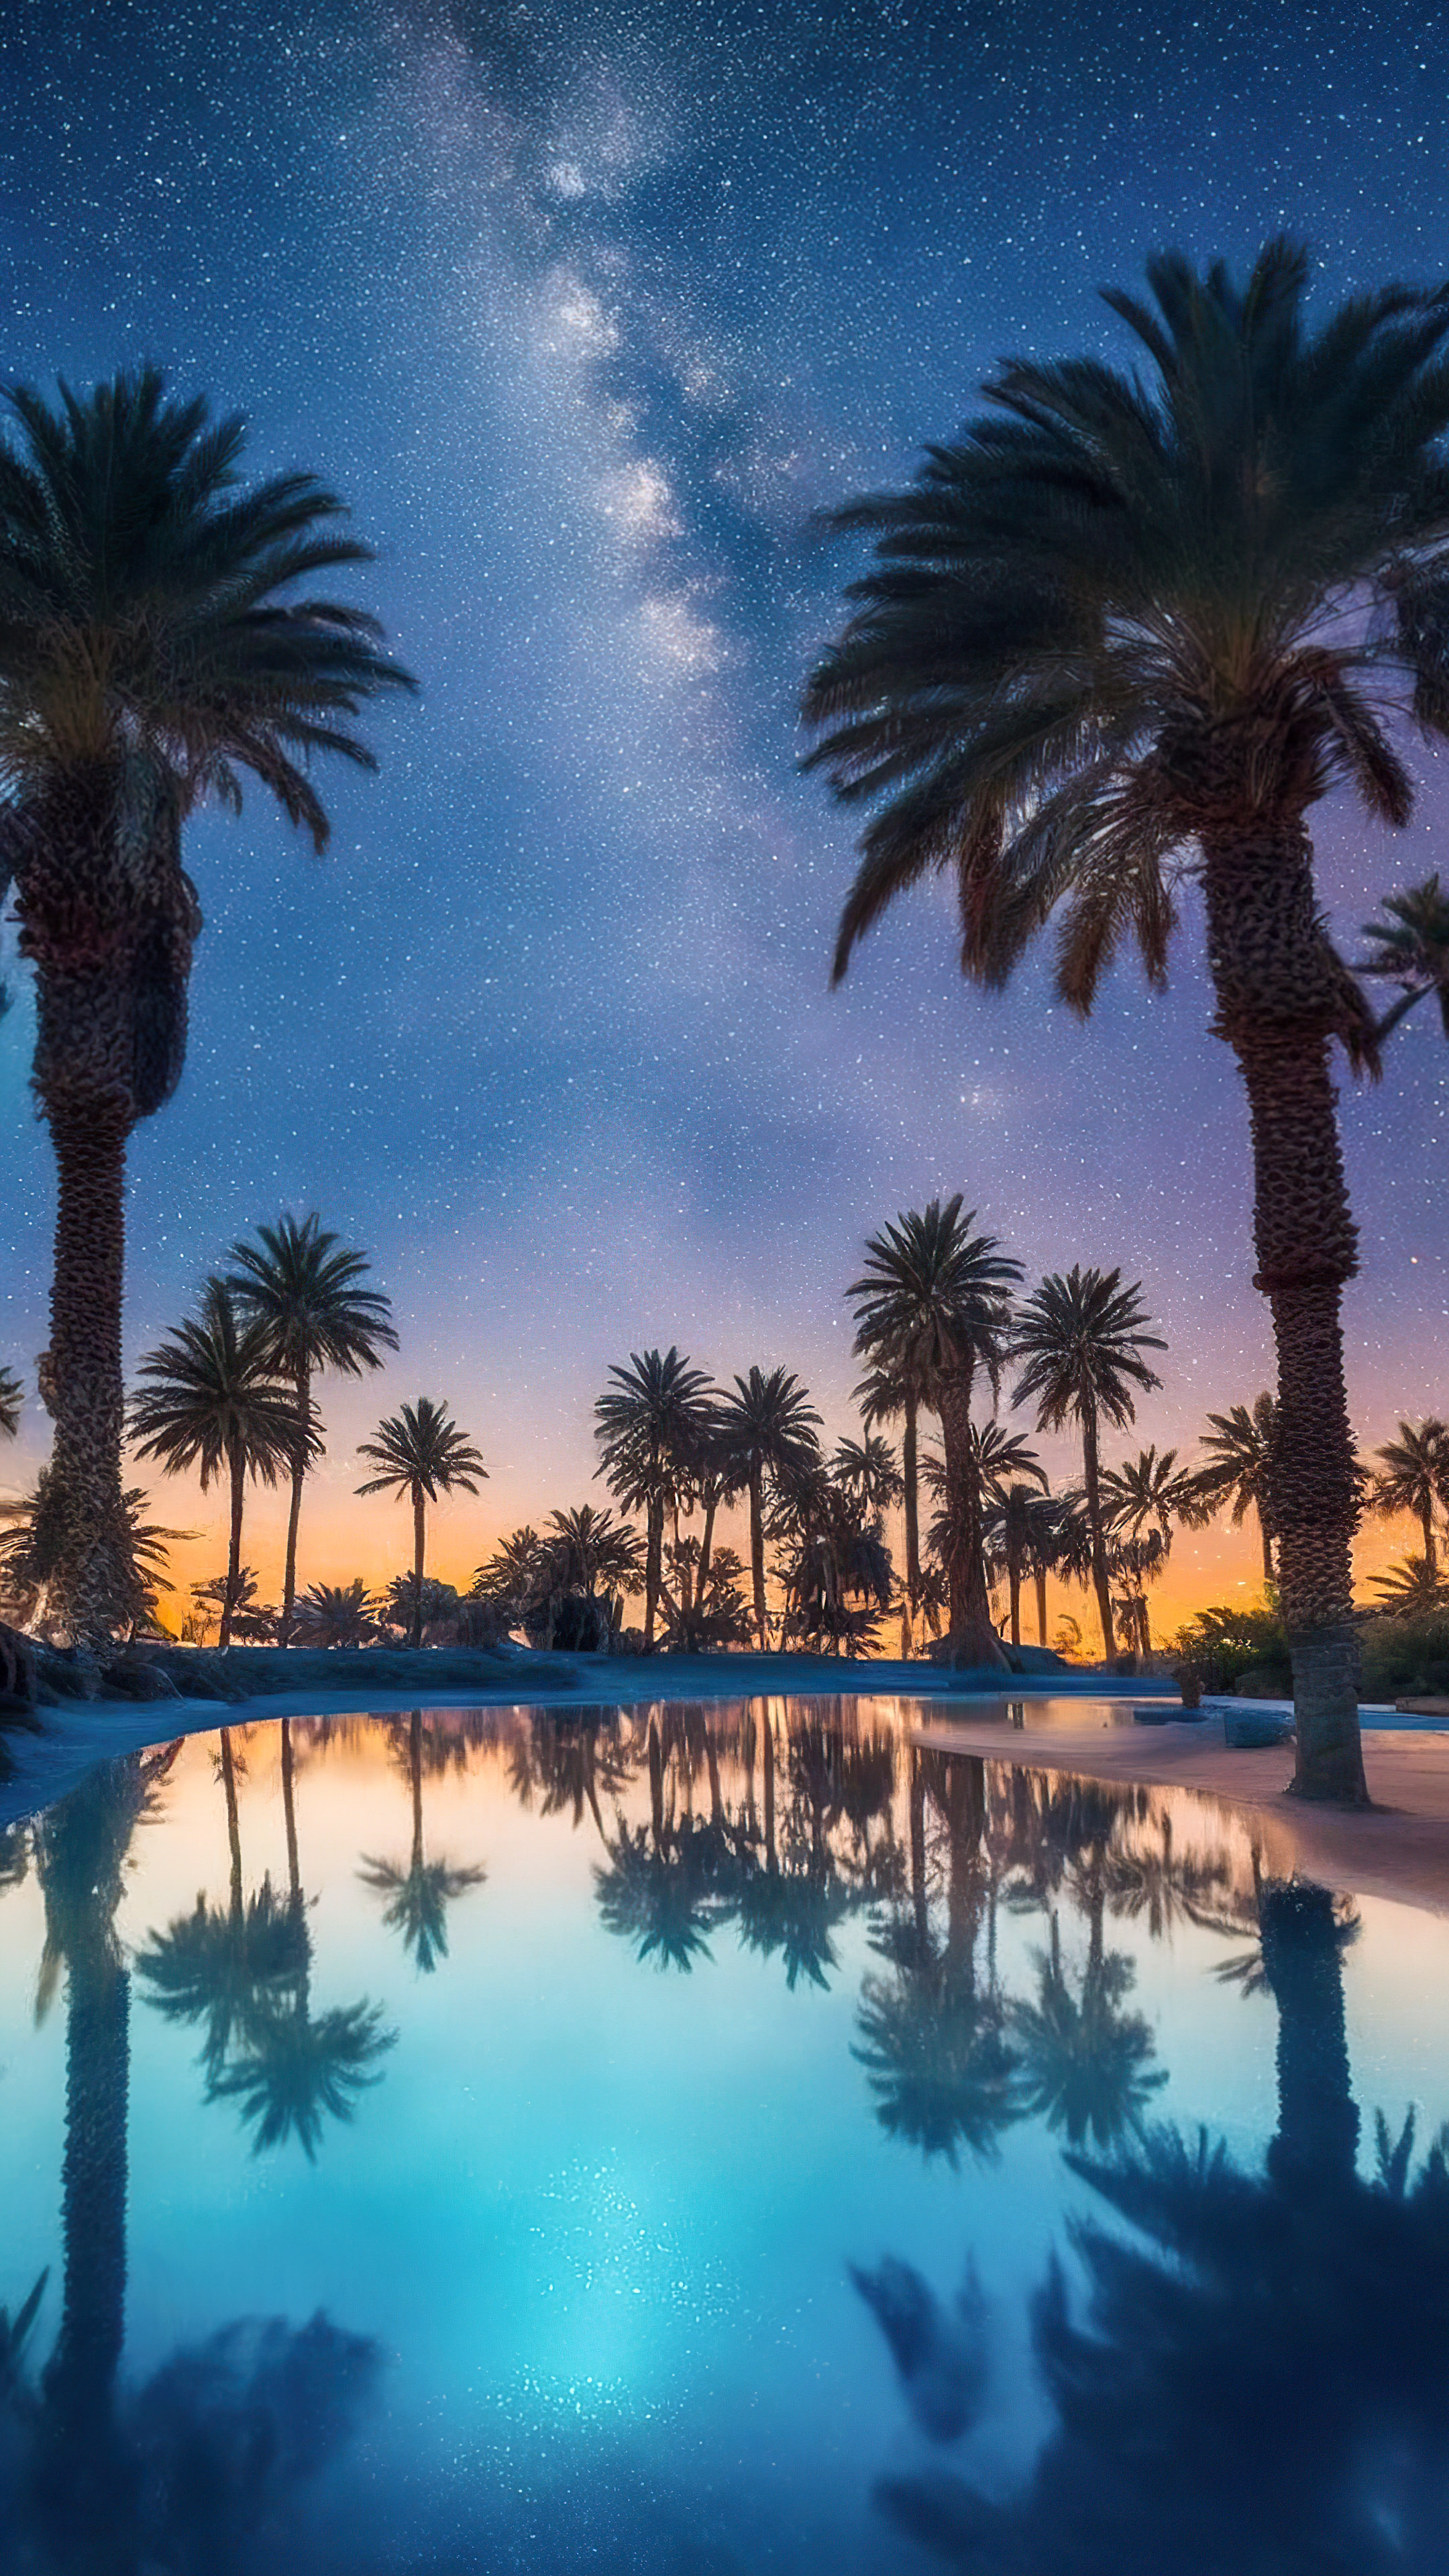 Émerveillez-vous devant la beauté de notre fond d'écran de ciel étoilé, capturant une oasis désertique sous la Voie lactée, où des palmiers entourent une piscine sereine et étoilée.